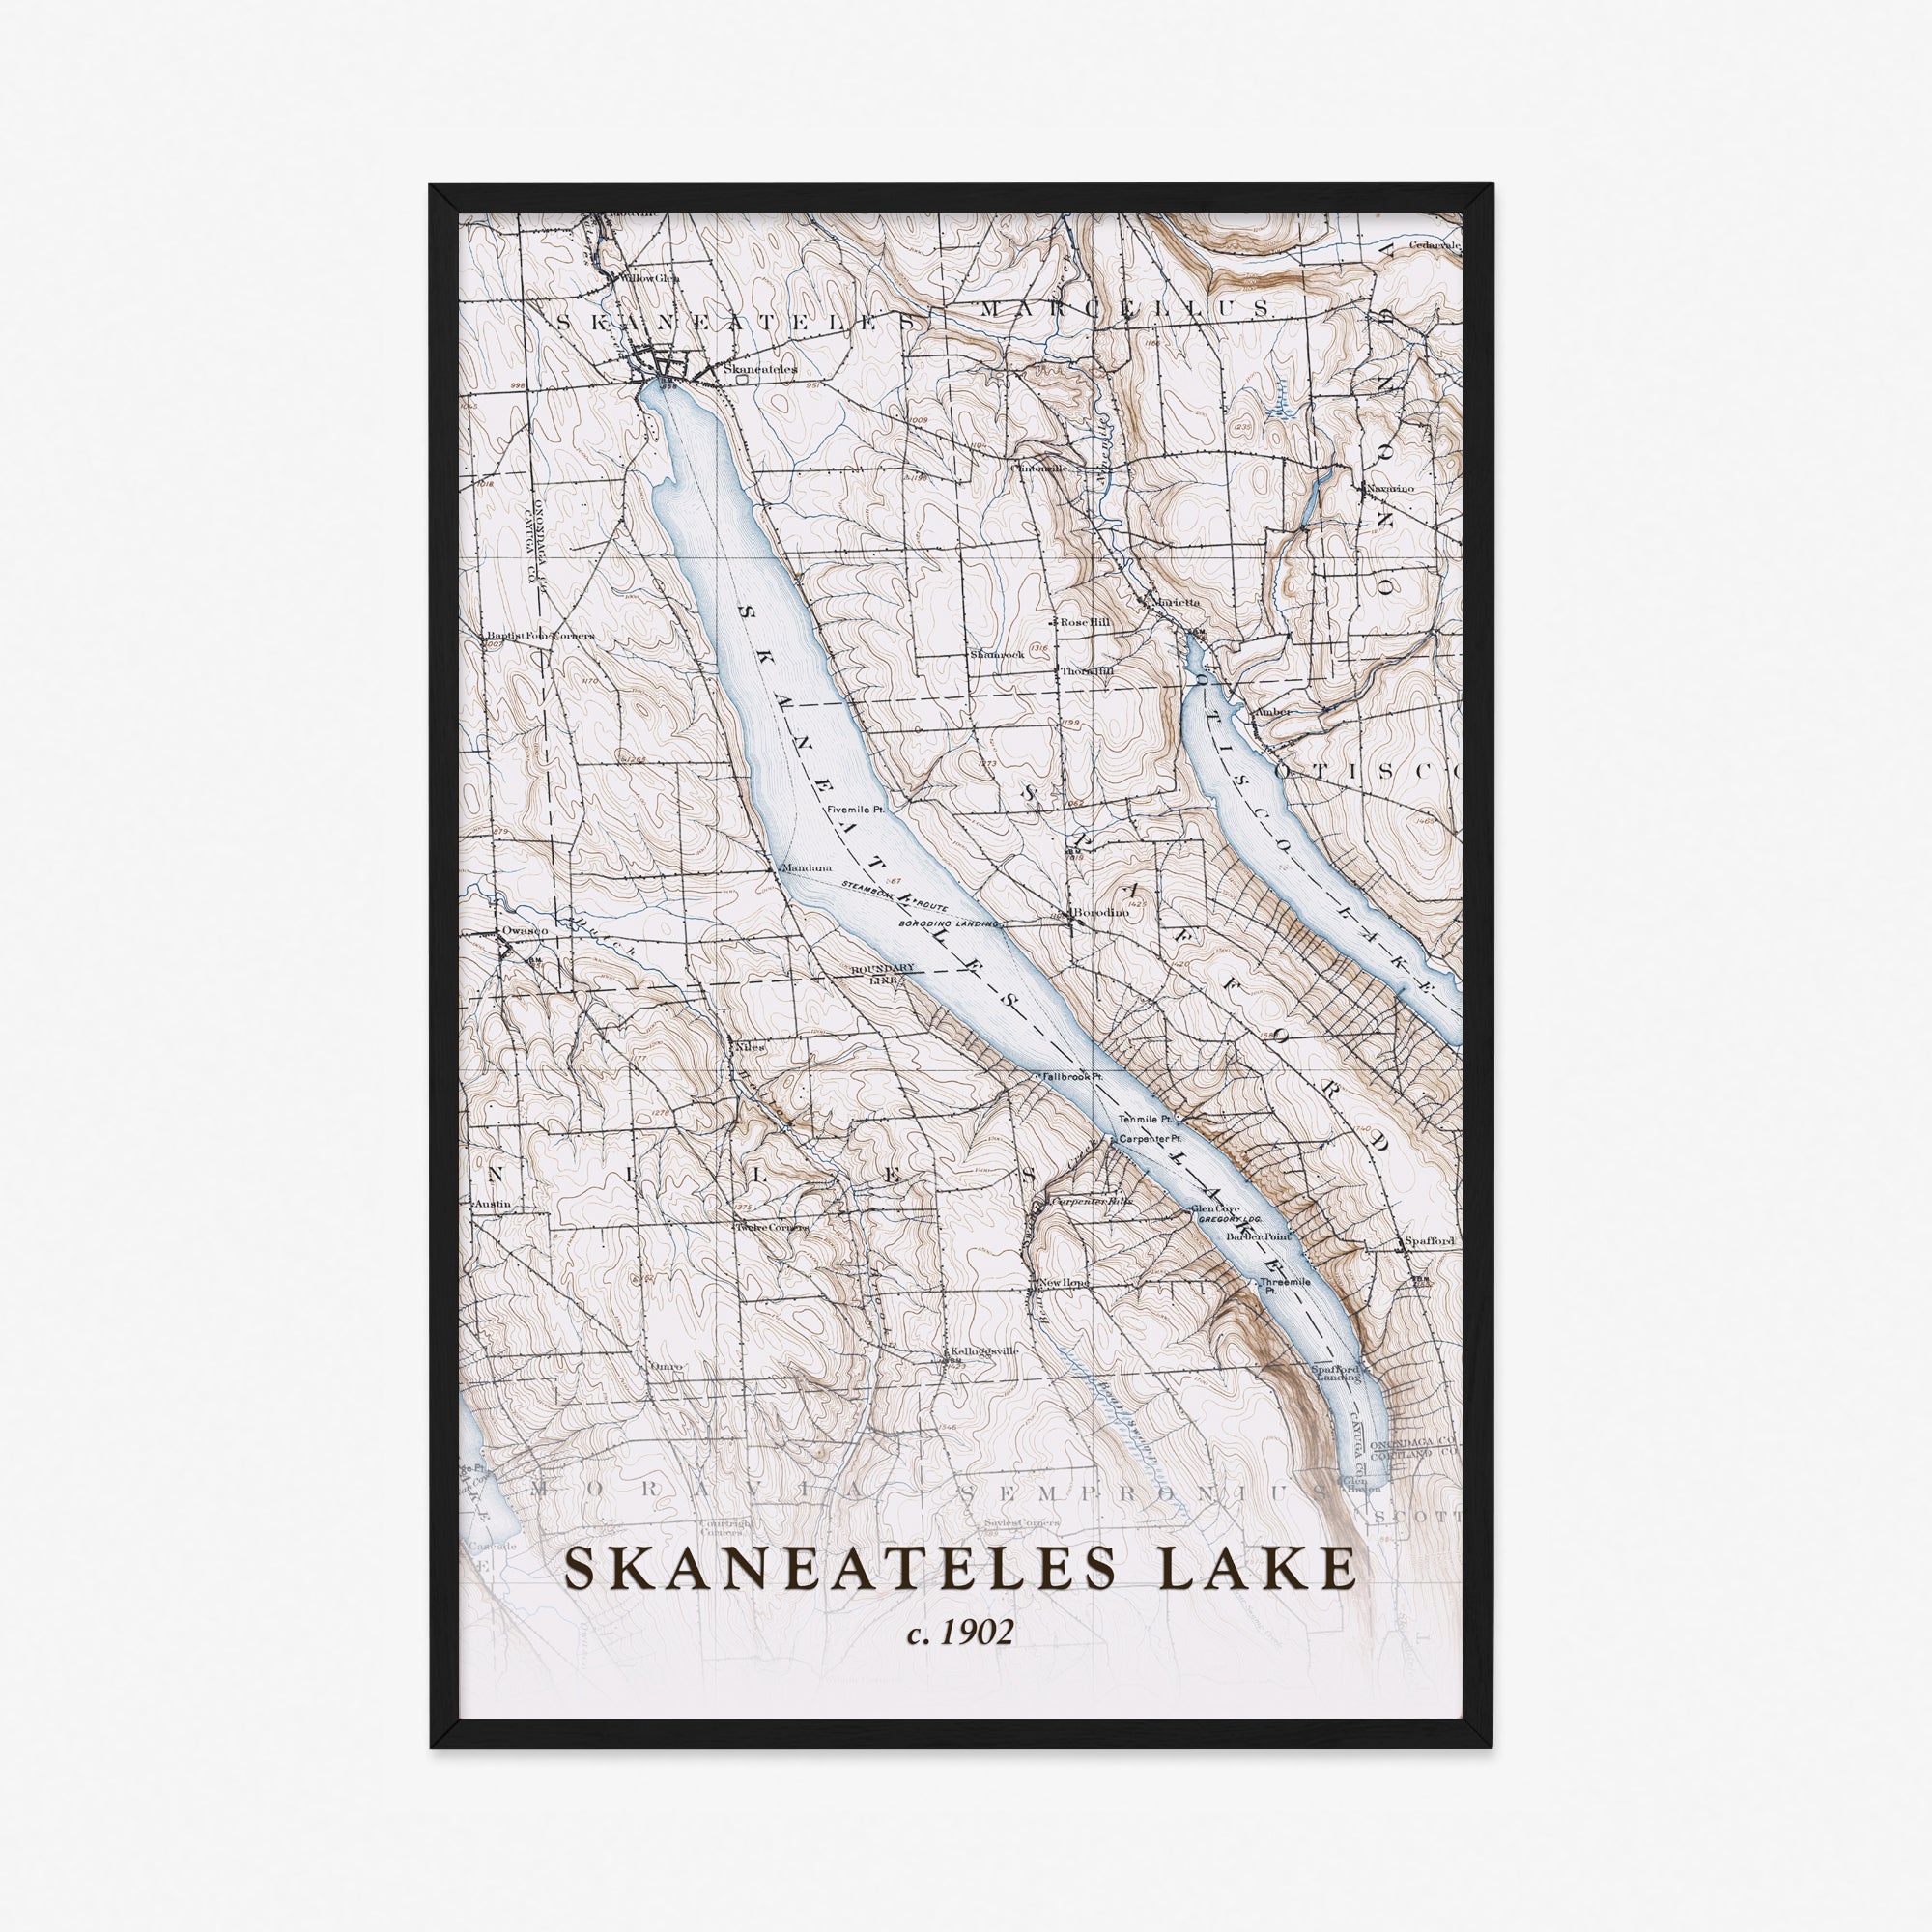 Skaneateles Lake, NY - 1902 Topographic Map